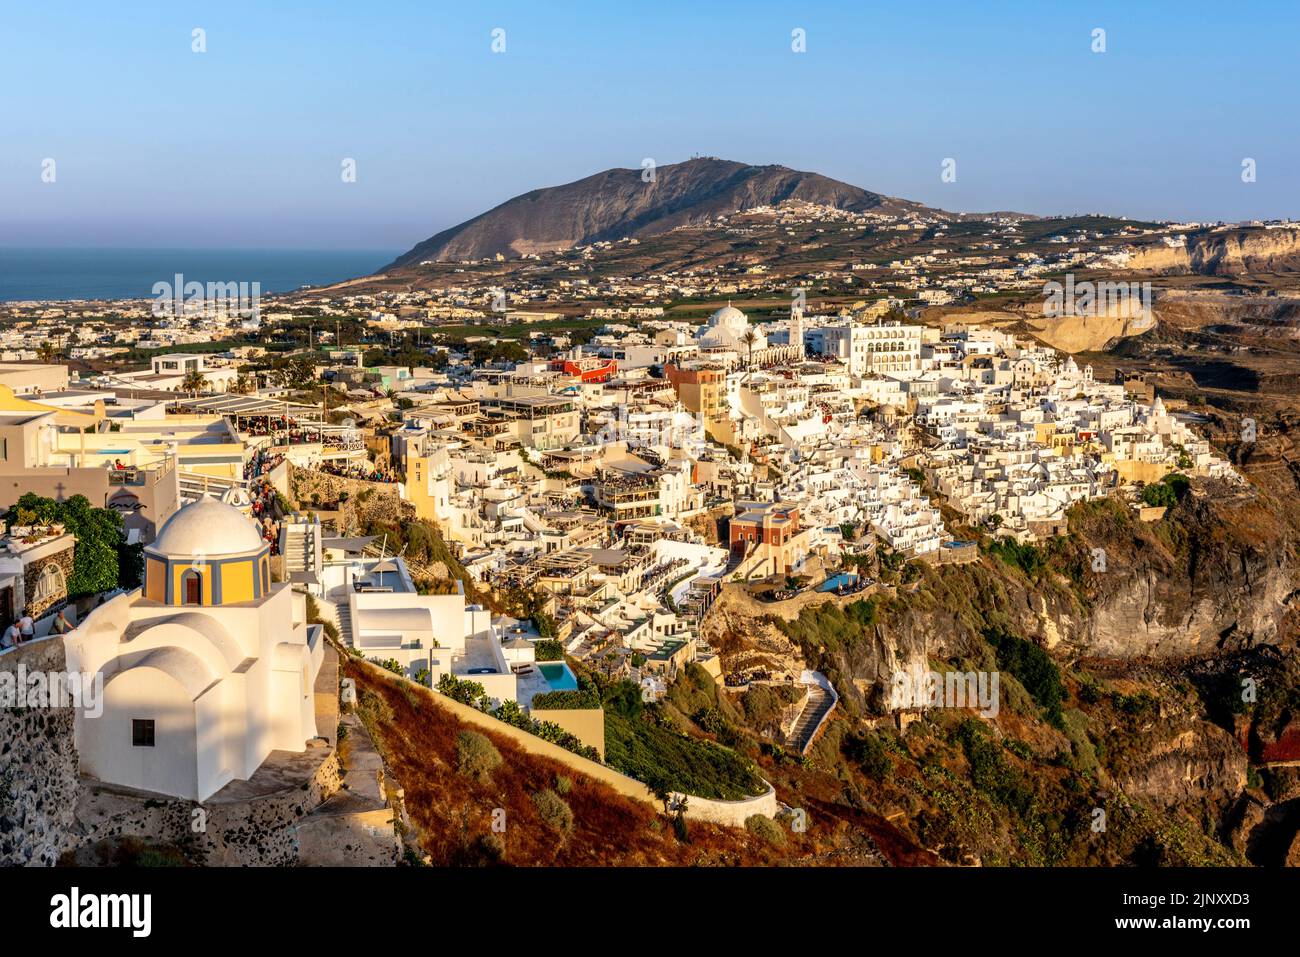 Vue sur la ville principale de Thira (Thera) sur l'île de Santorini, les îles grecques, la Grèce. Banque D'Images